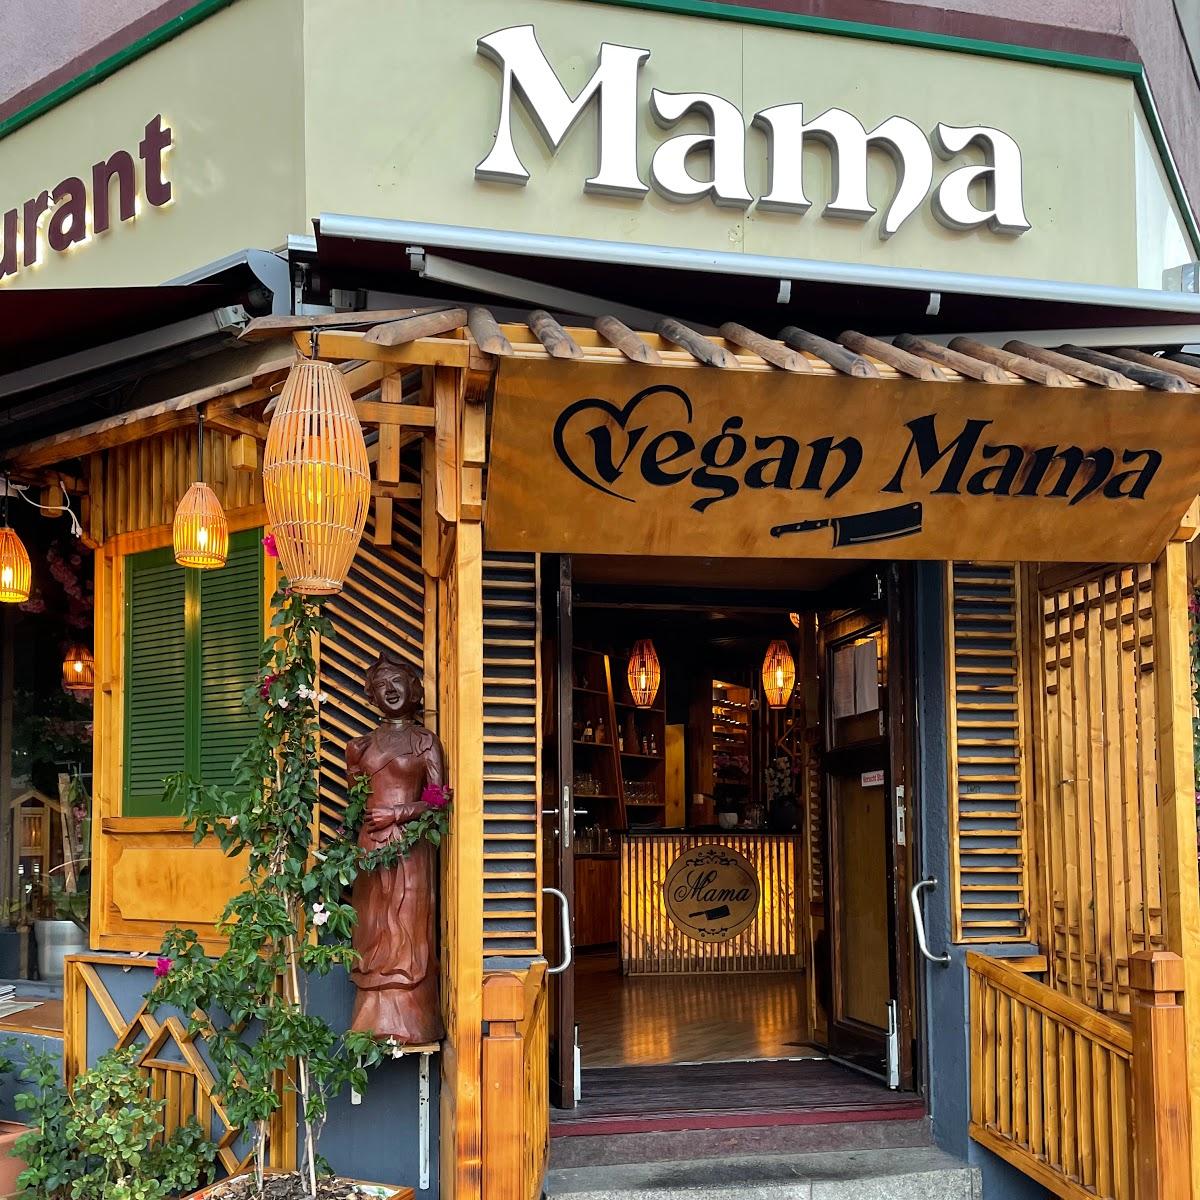 Restaurant "Mama Vegan" in Berlin